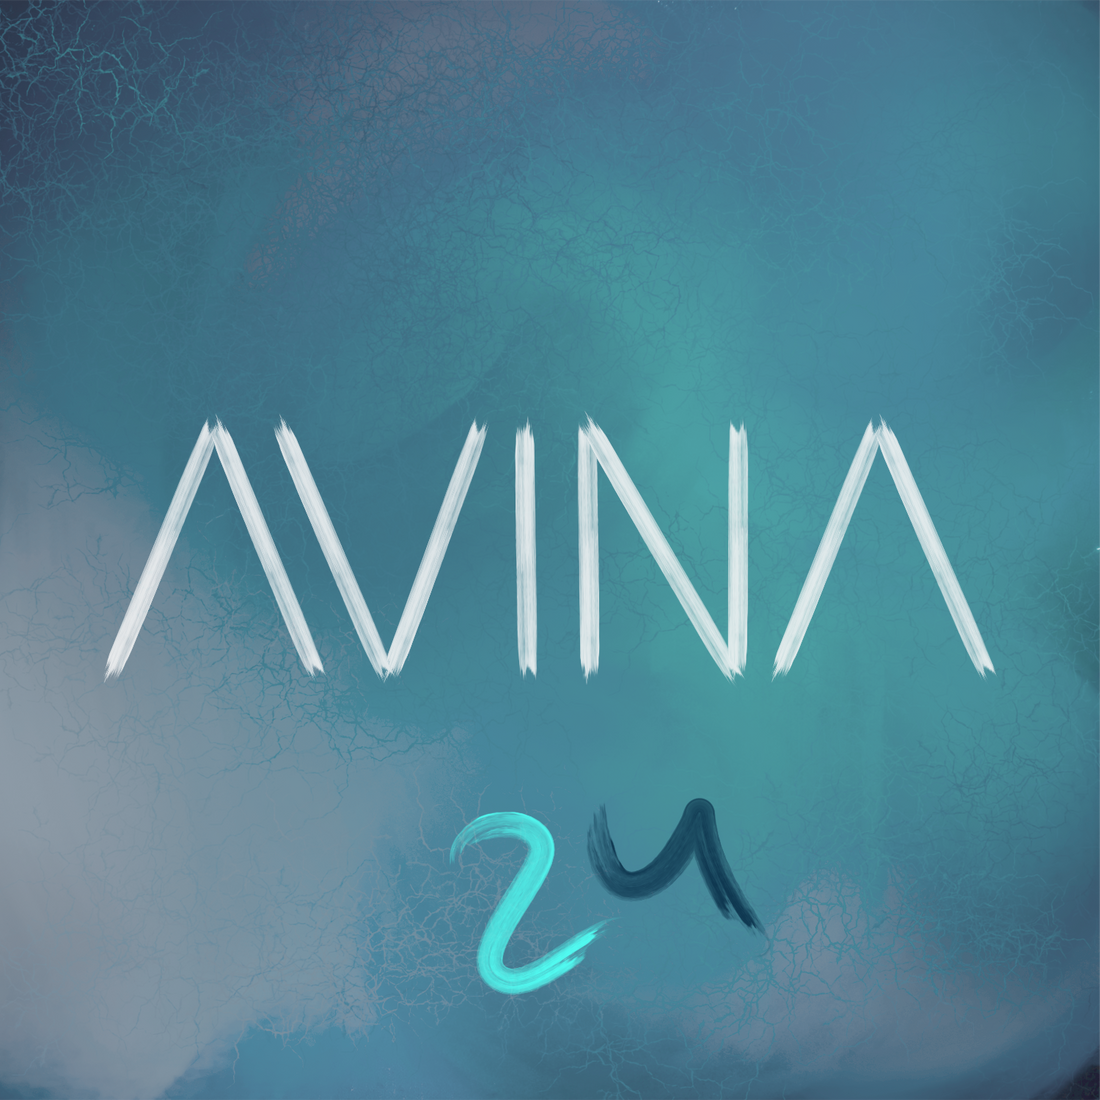 AVINA präsentieren Debütalbum "24"